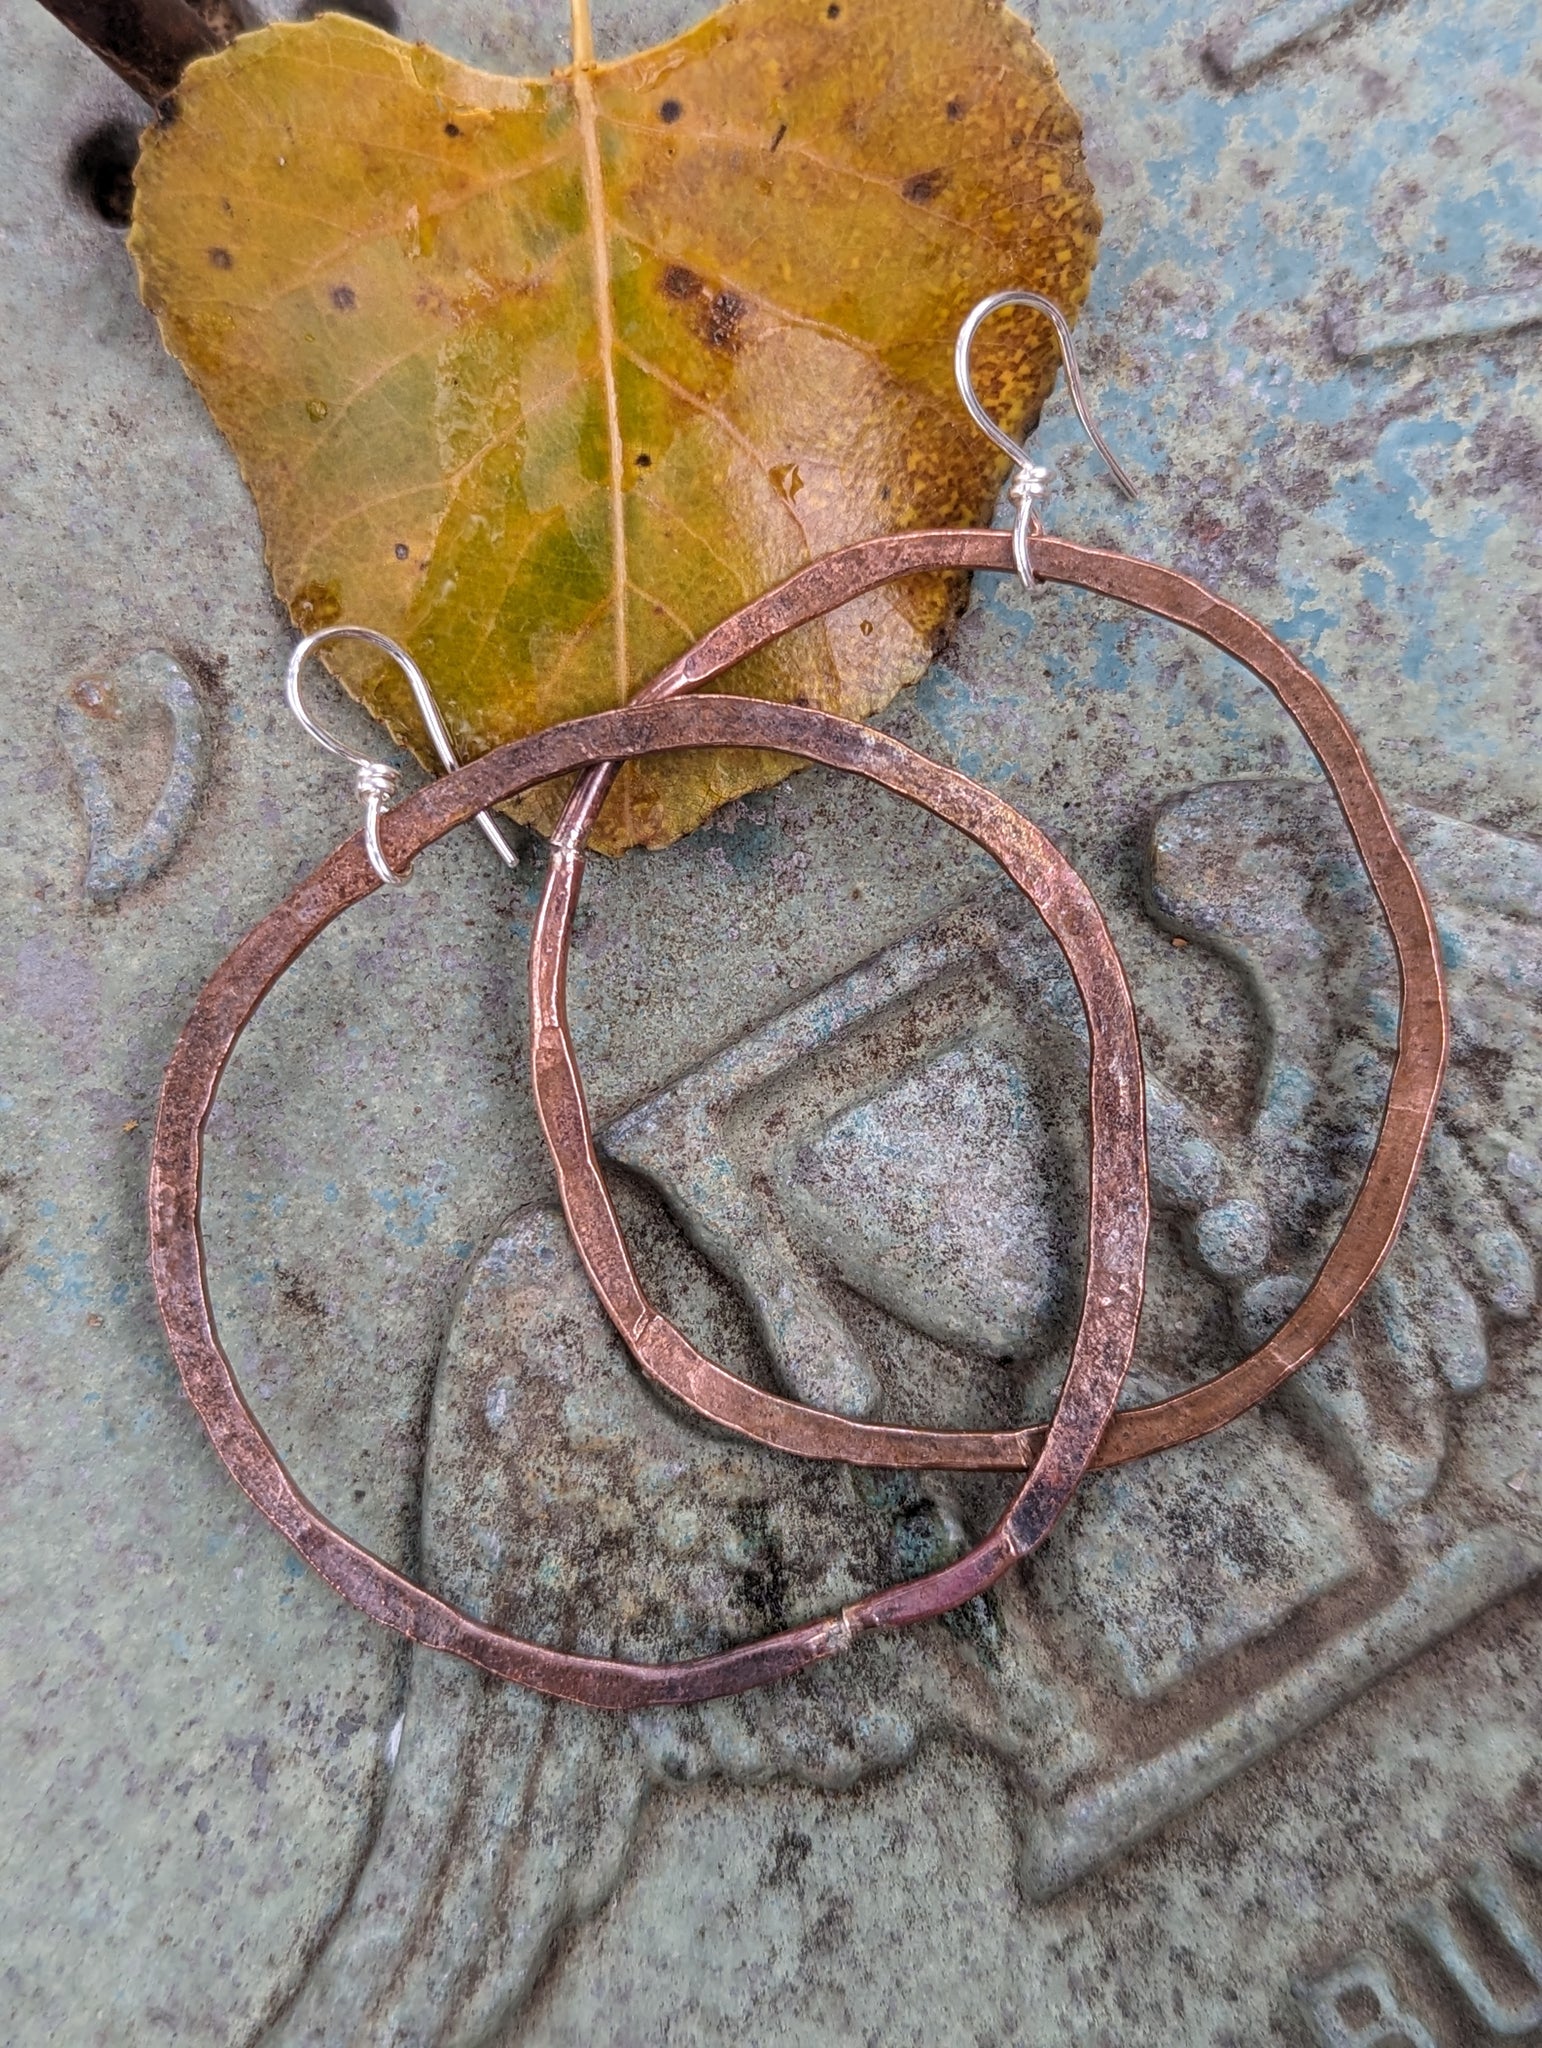 Hammered Copper Hoop Earrings